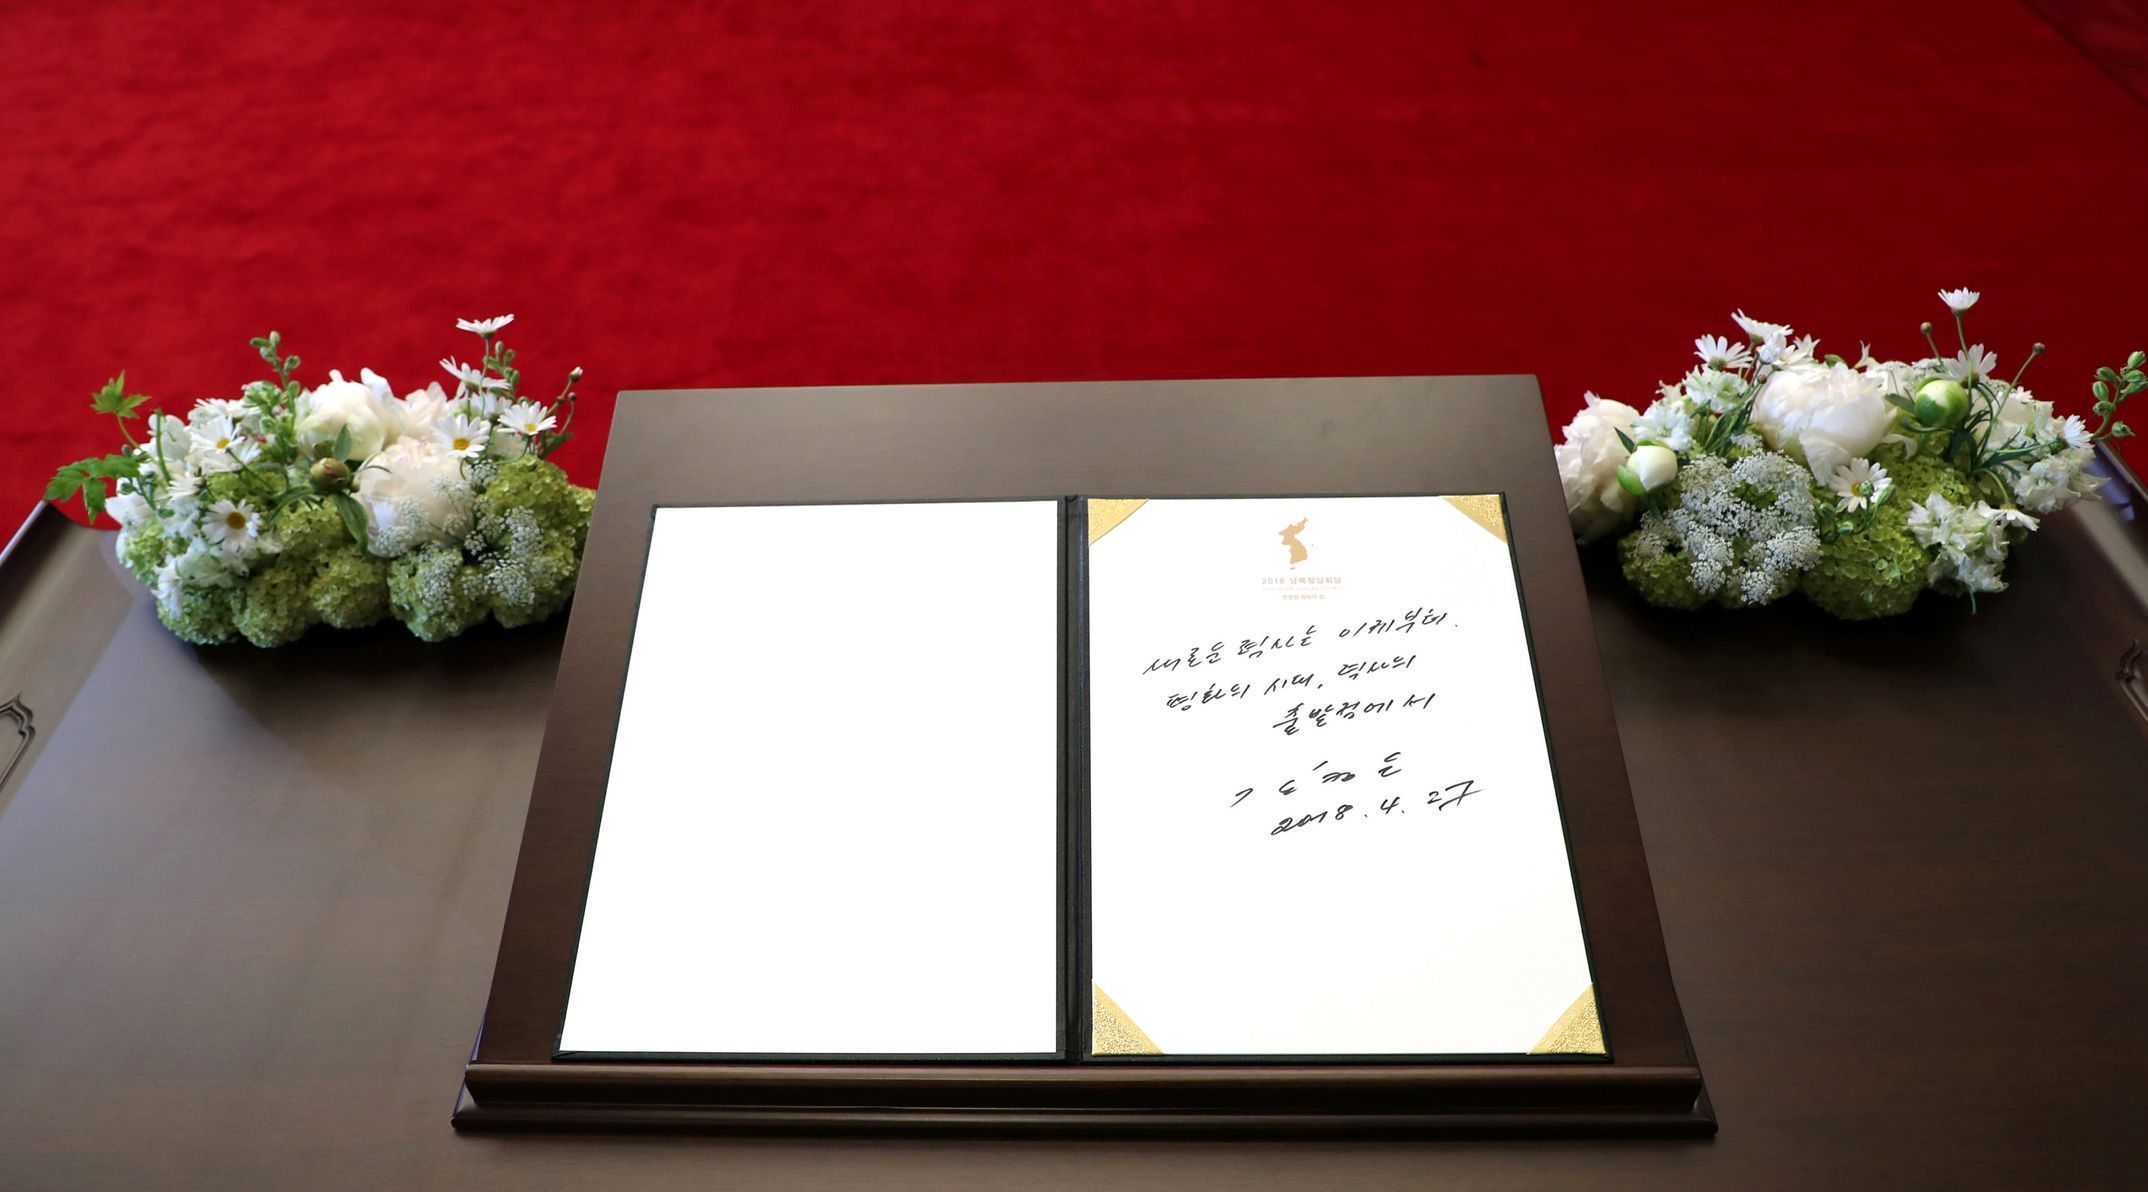 Summit Korejí: Kim Čong-un zanechal vzkaz v návštěvní knize v Mírovém domě